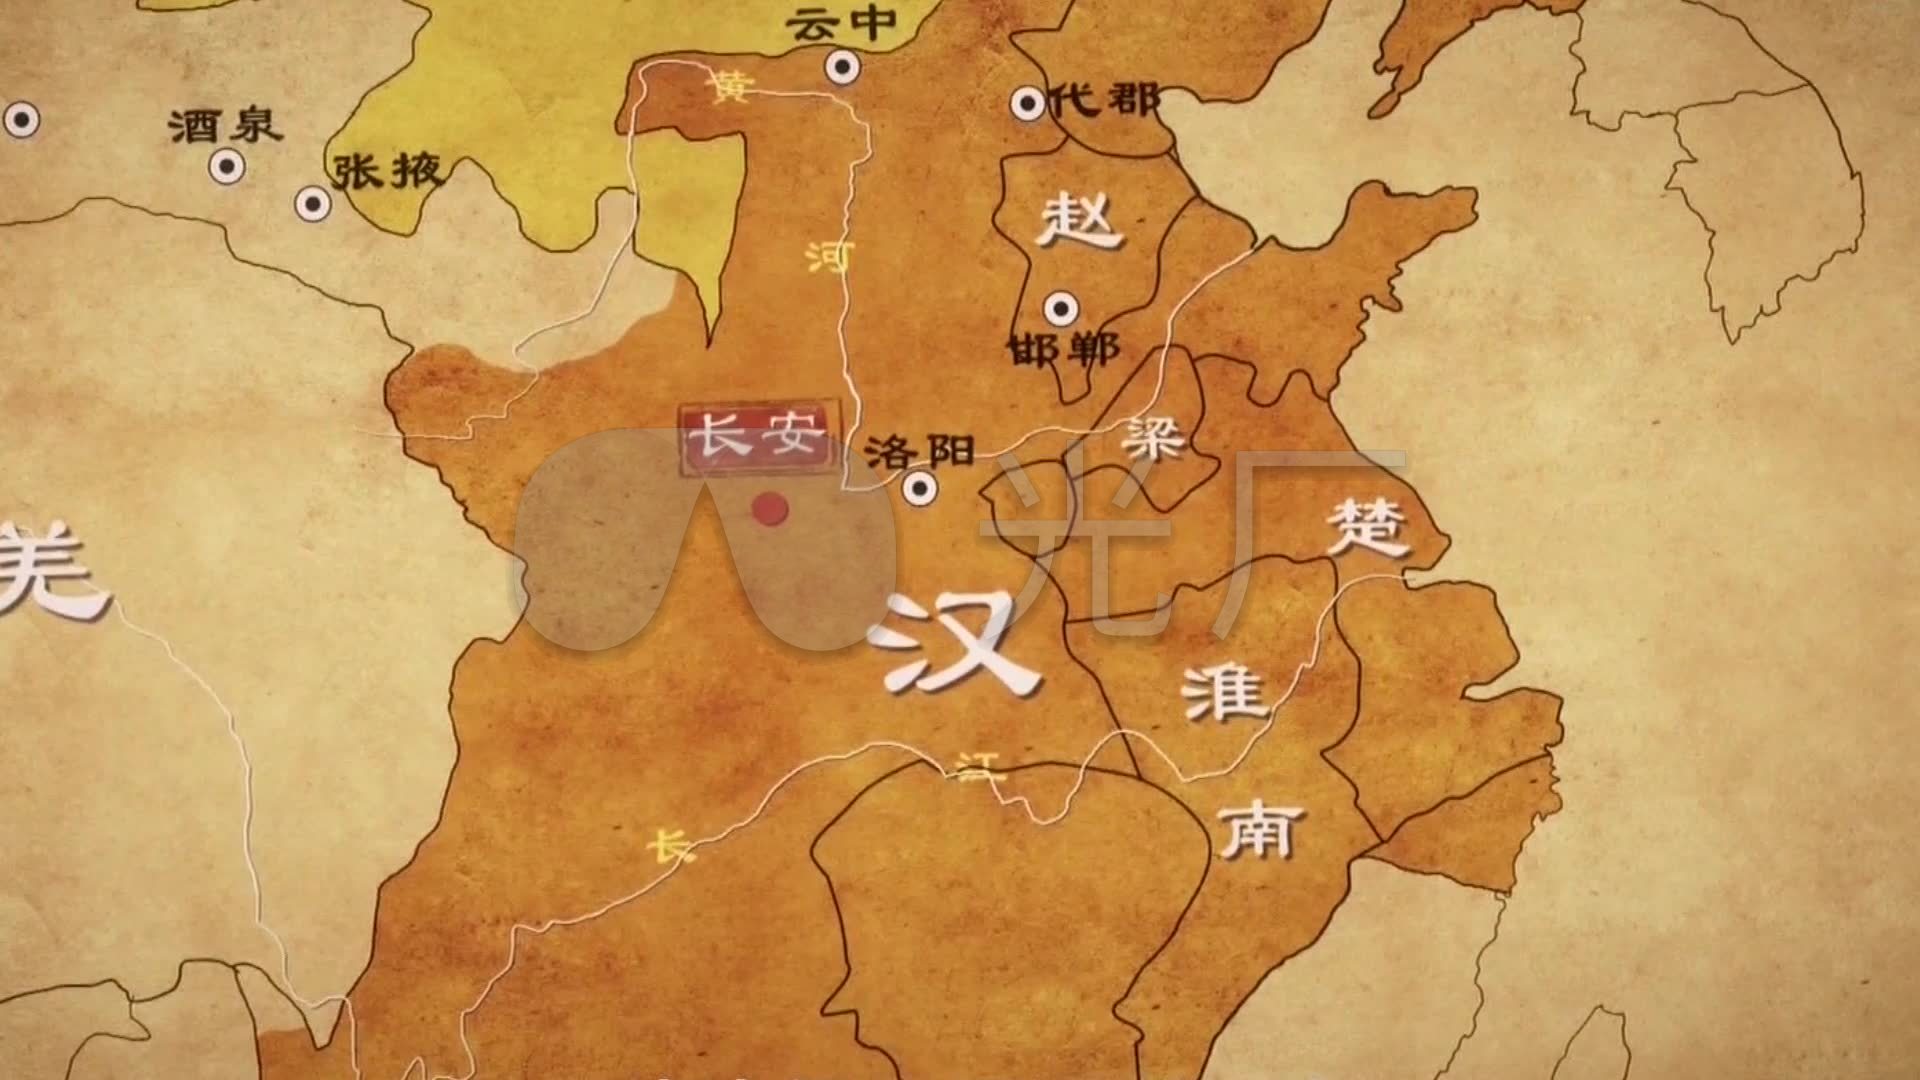 汉朝最大时期地图_汉朝汉景帝时期的地图_微信公众号文章